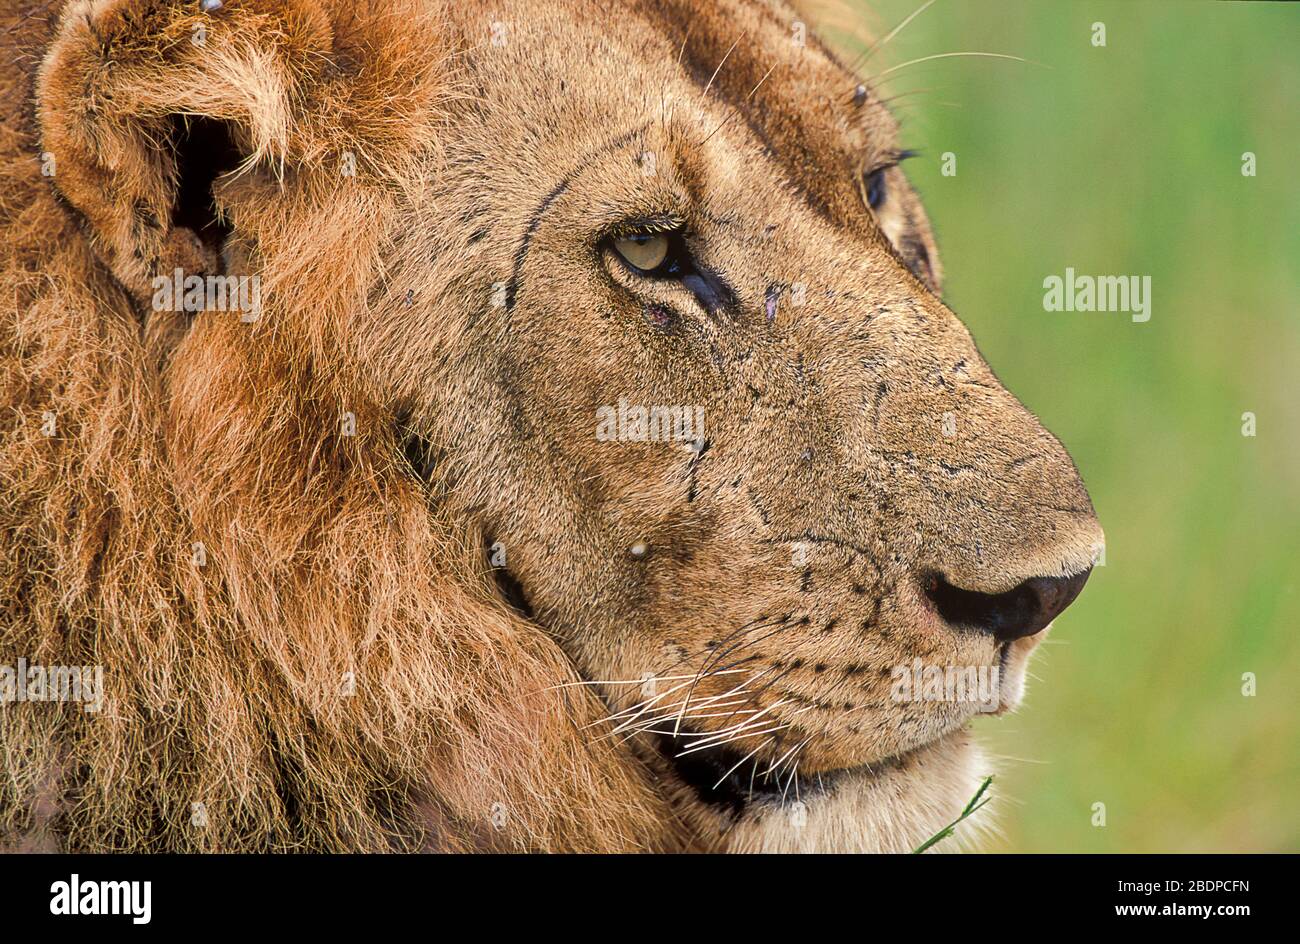 Lion, Panthera leo, Male, close up of face, Zimbabwe, Africa, portrait,eyes,scars Stock Photo